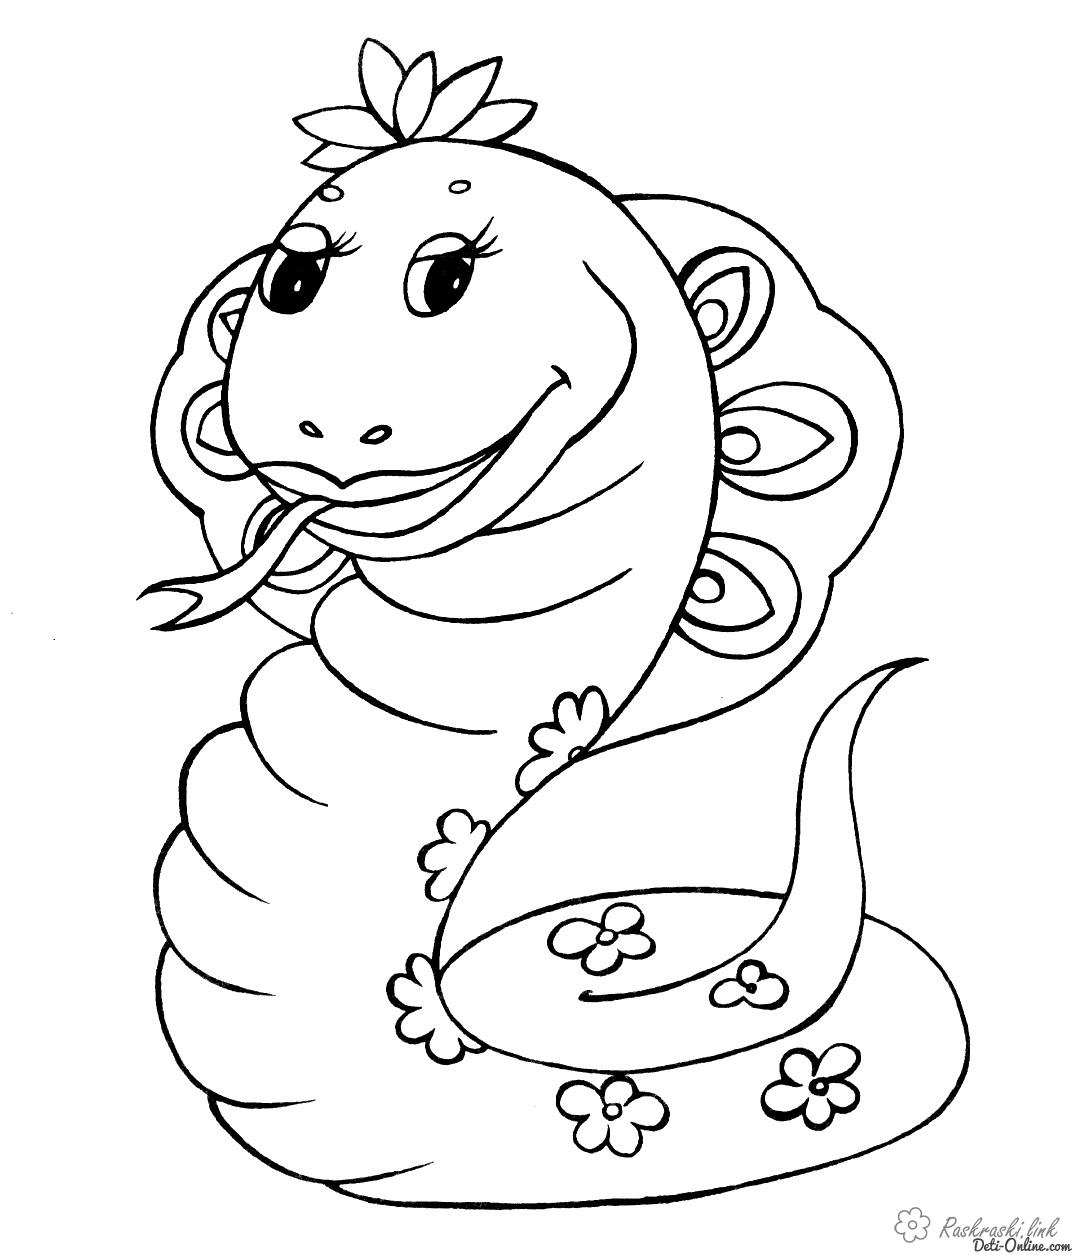 Раскраски Рептилии Детская раскраска рептилии, змея